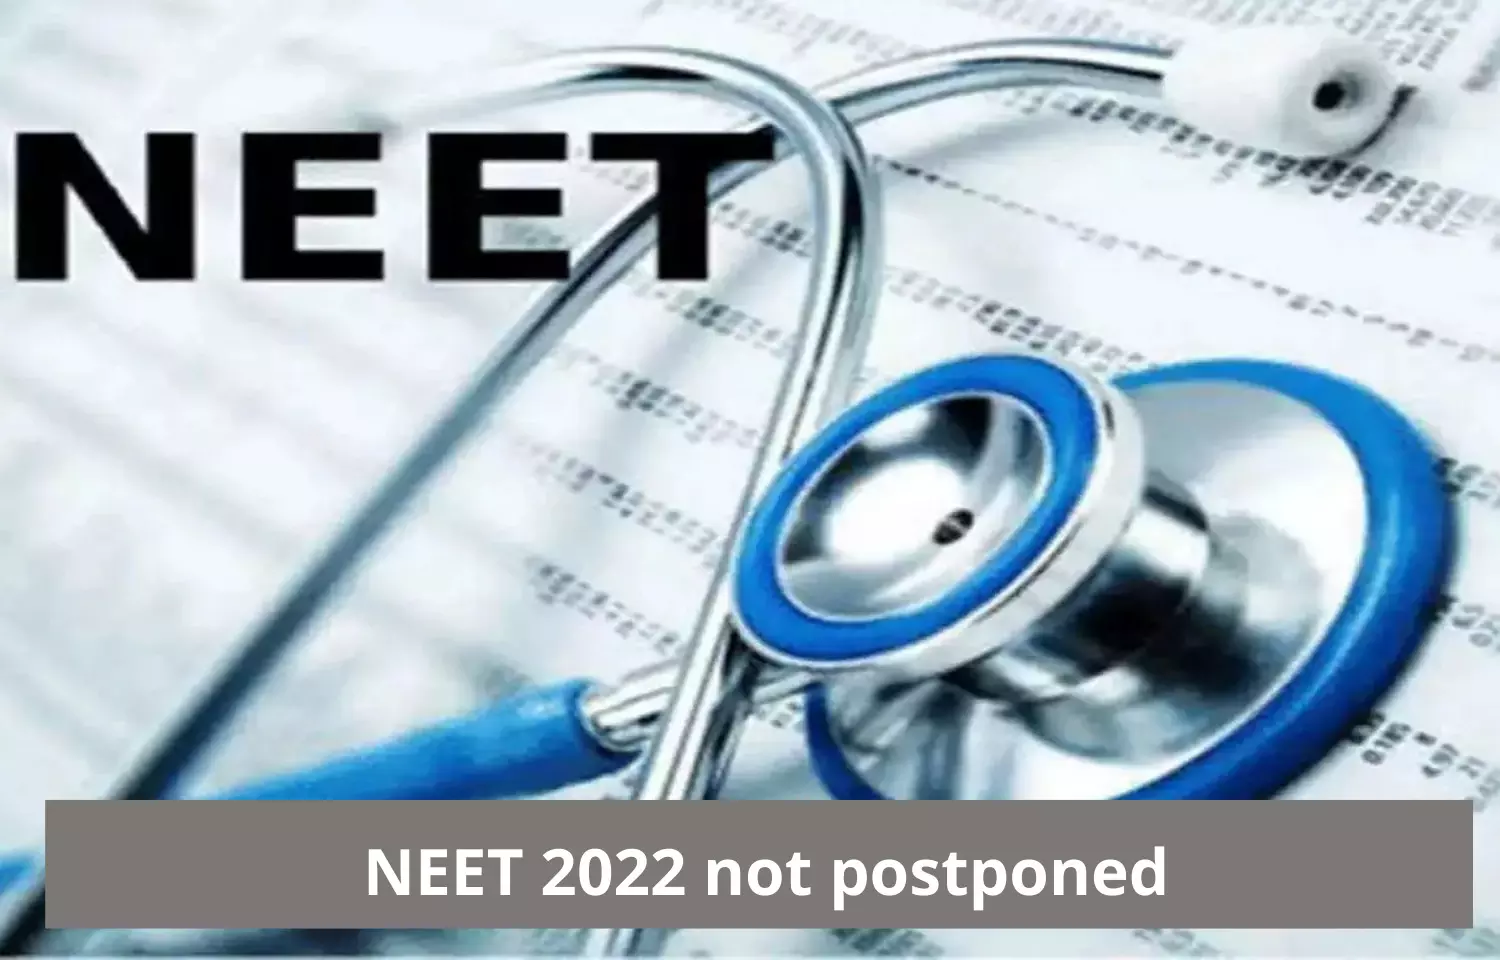 Fact Check: NEET 2022 not postponed